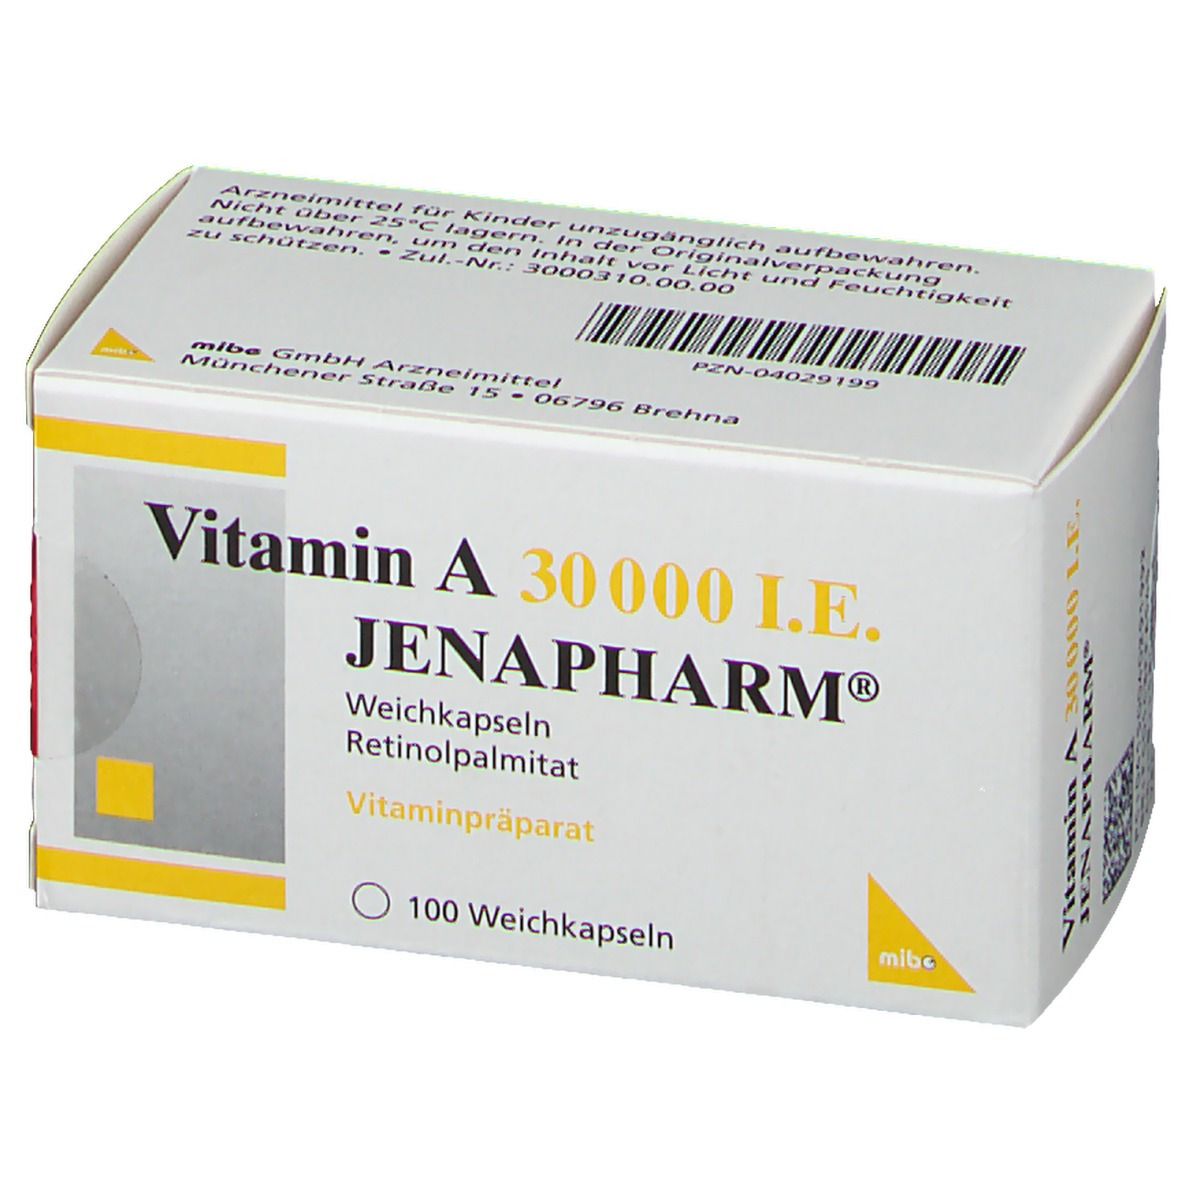 Vitamin A 30.000 I.E. JENAPHARM®